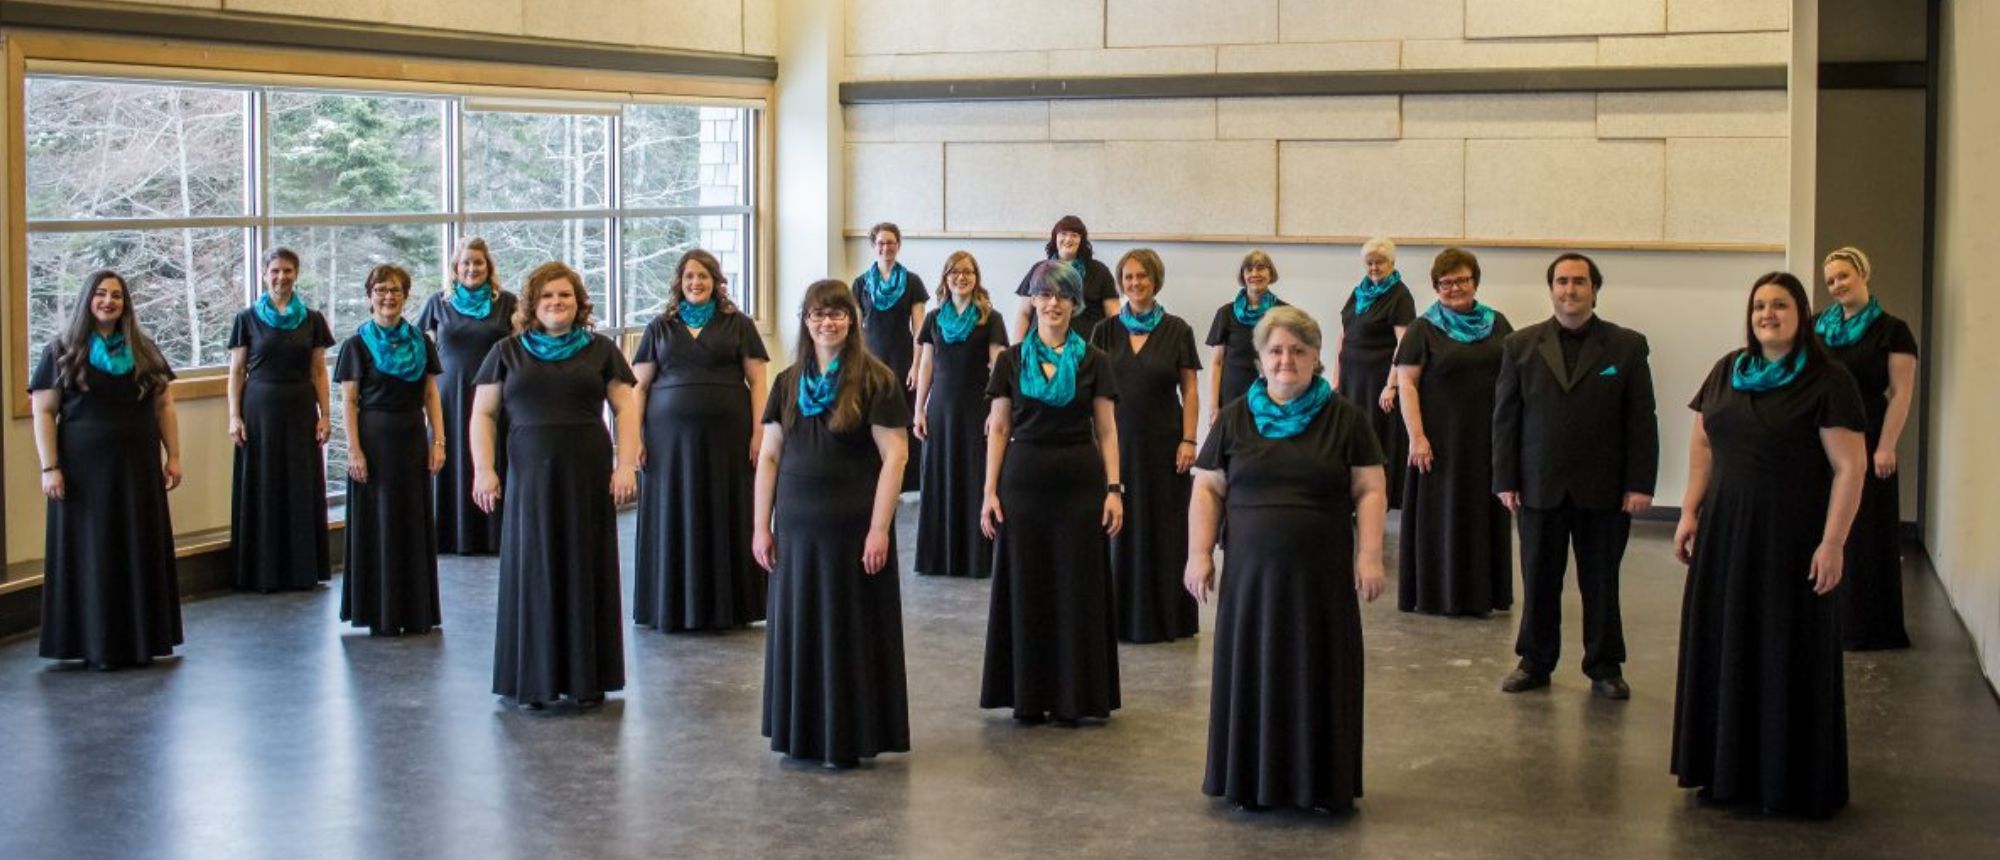 Inspiring Women - A Concert by Aurora Women's Choir